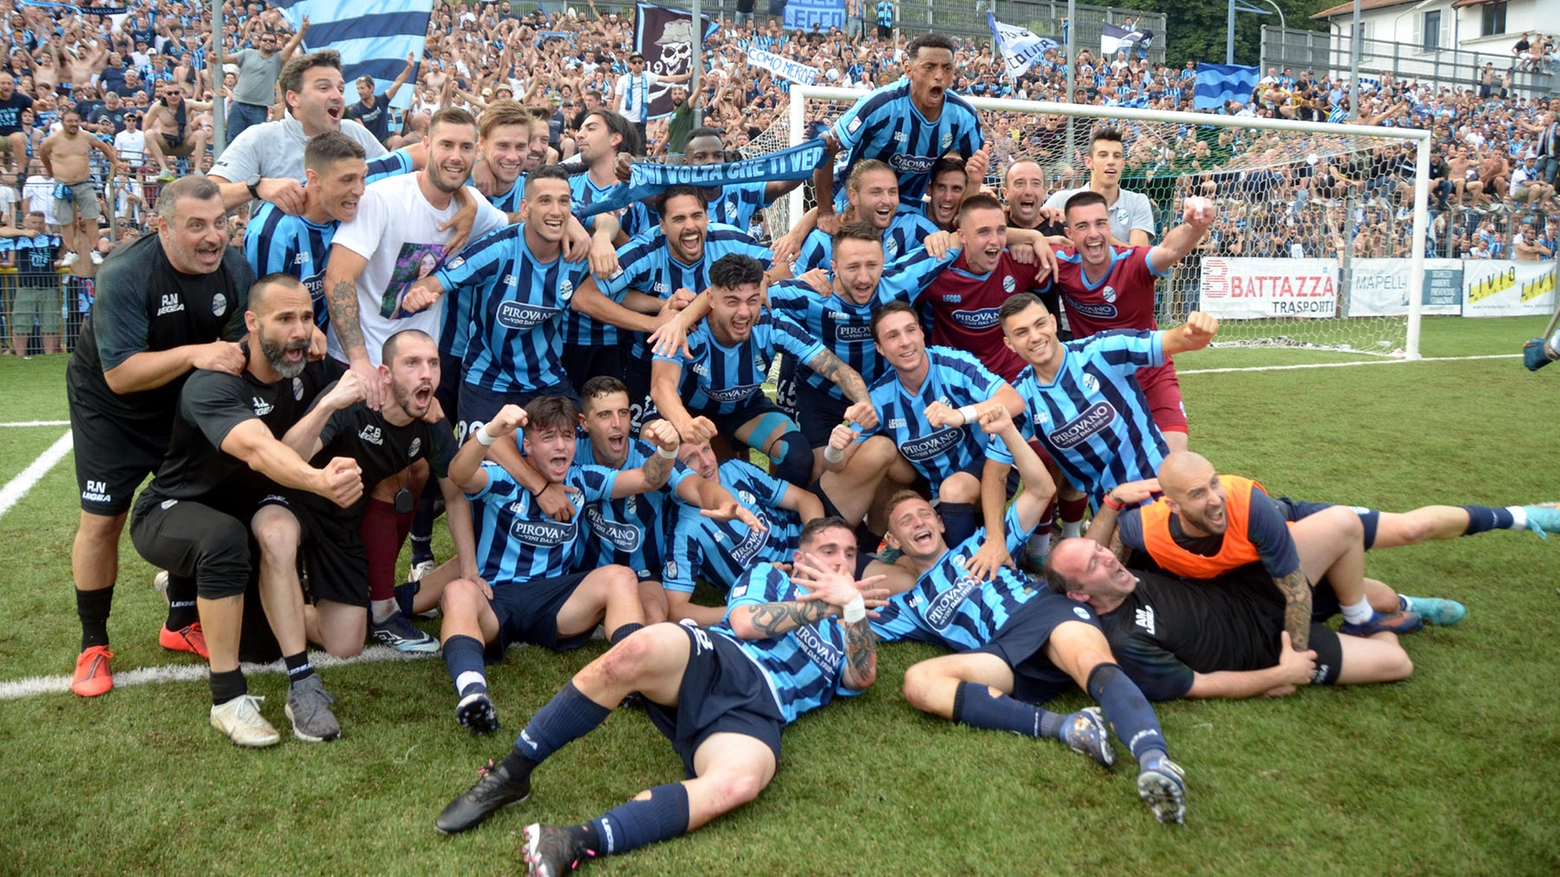 La squadra festeggia la fresca promozione dopo la finale di ritorno playoff  contro il Foggia giocata a Lecco domenica 18 giugno scorso